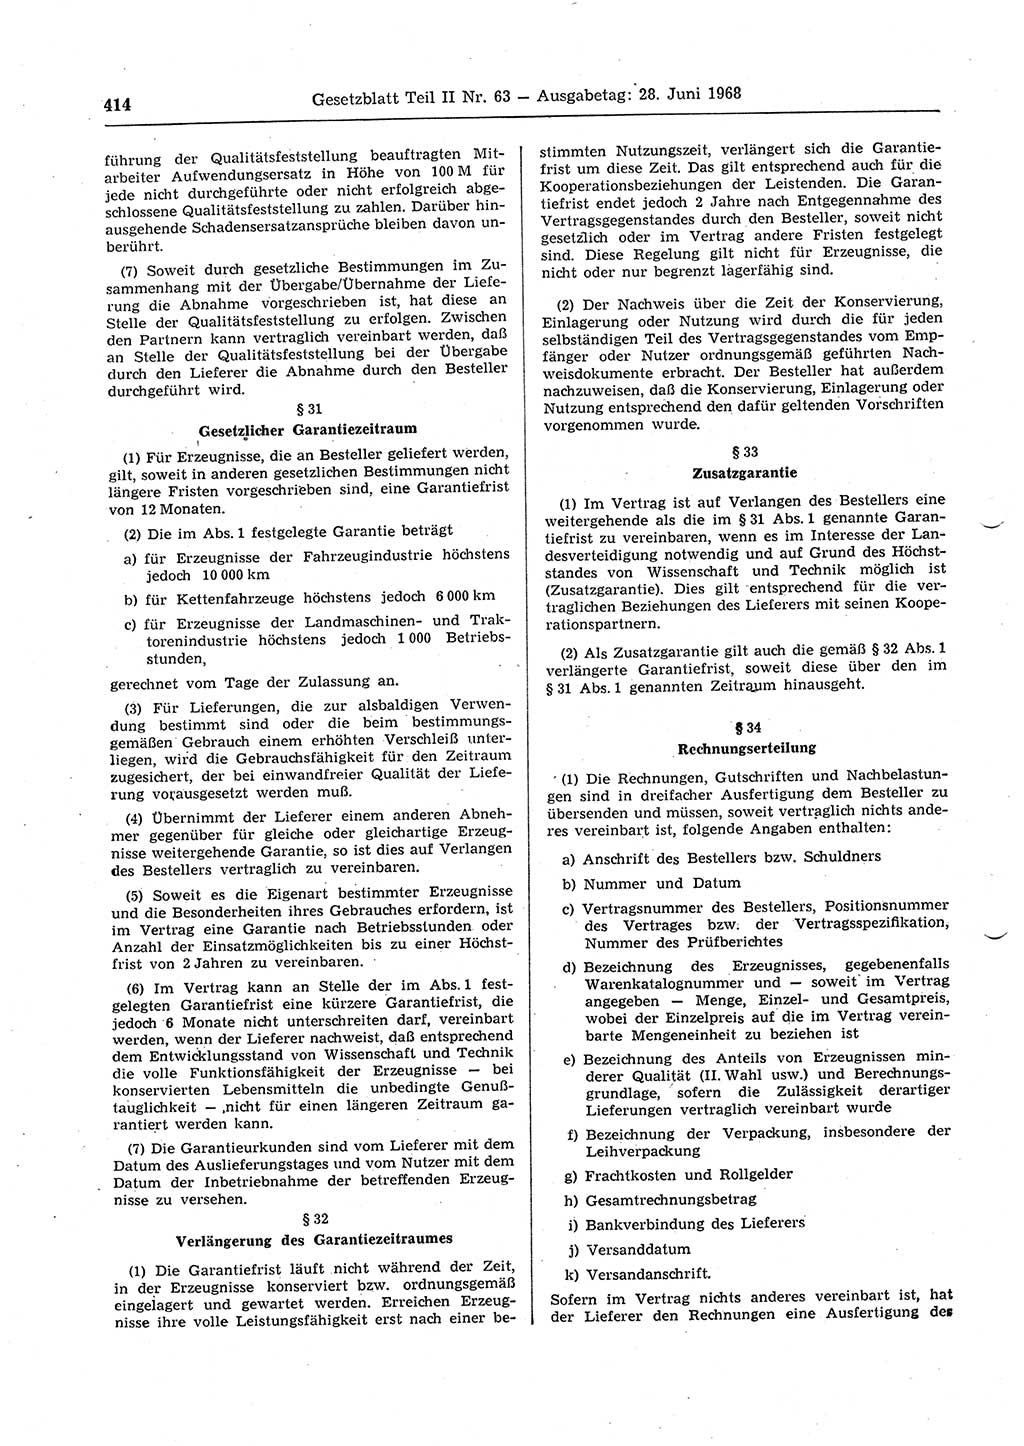 Gesetzblatt (GBl.) der Deutschen Demokratischen Republik (DDR) Teil ⅠⅠ 1968, Seite 414 (GBl. DDR ⅠⅠ 1968, S. 414)